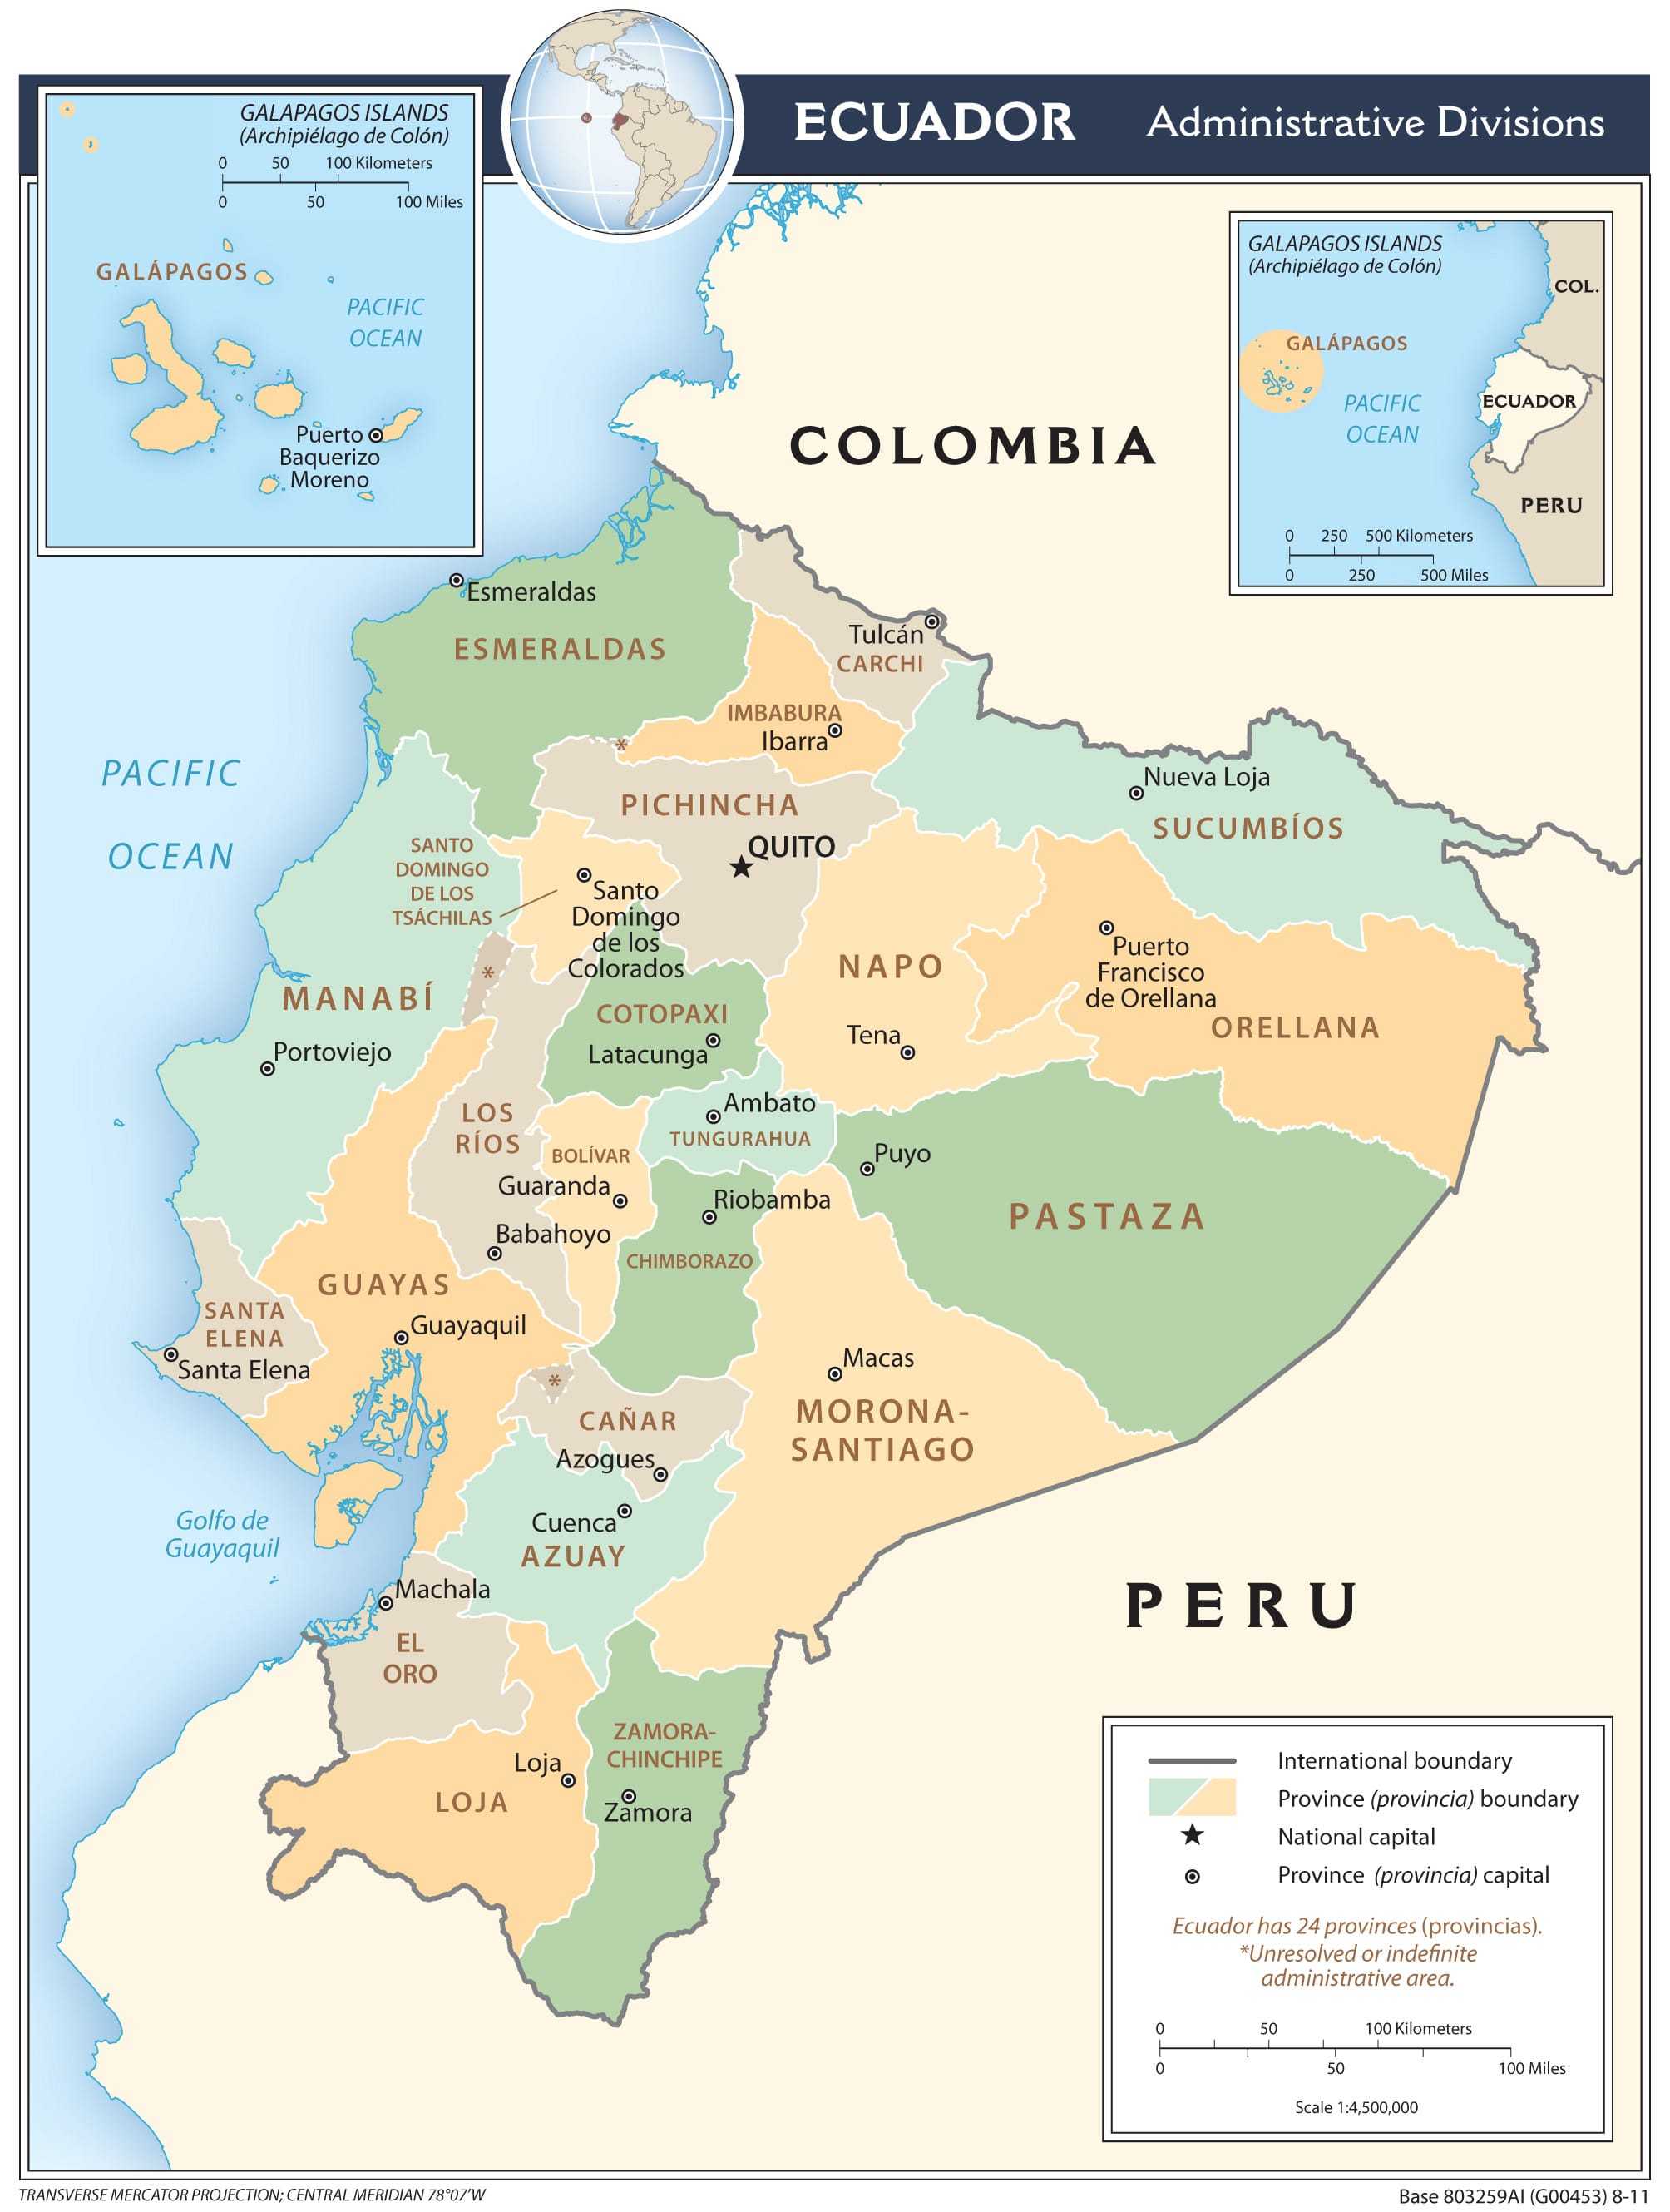 Administrative map of Ecuador.